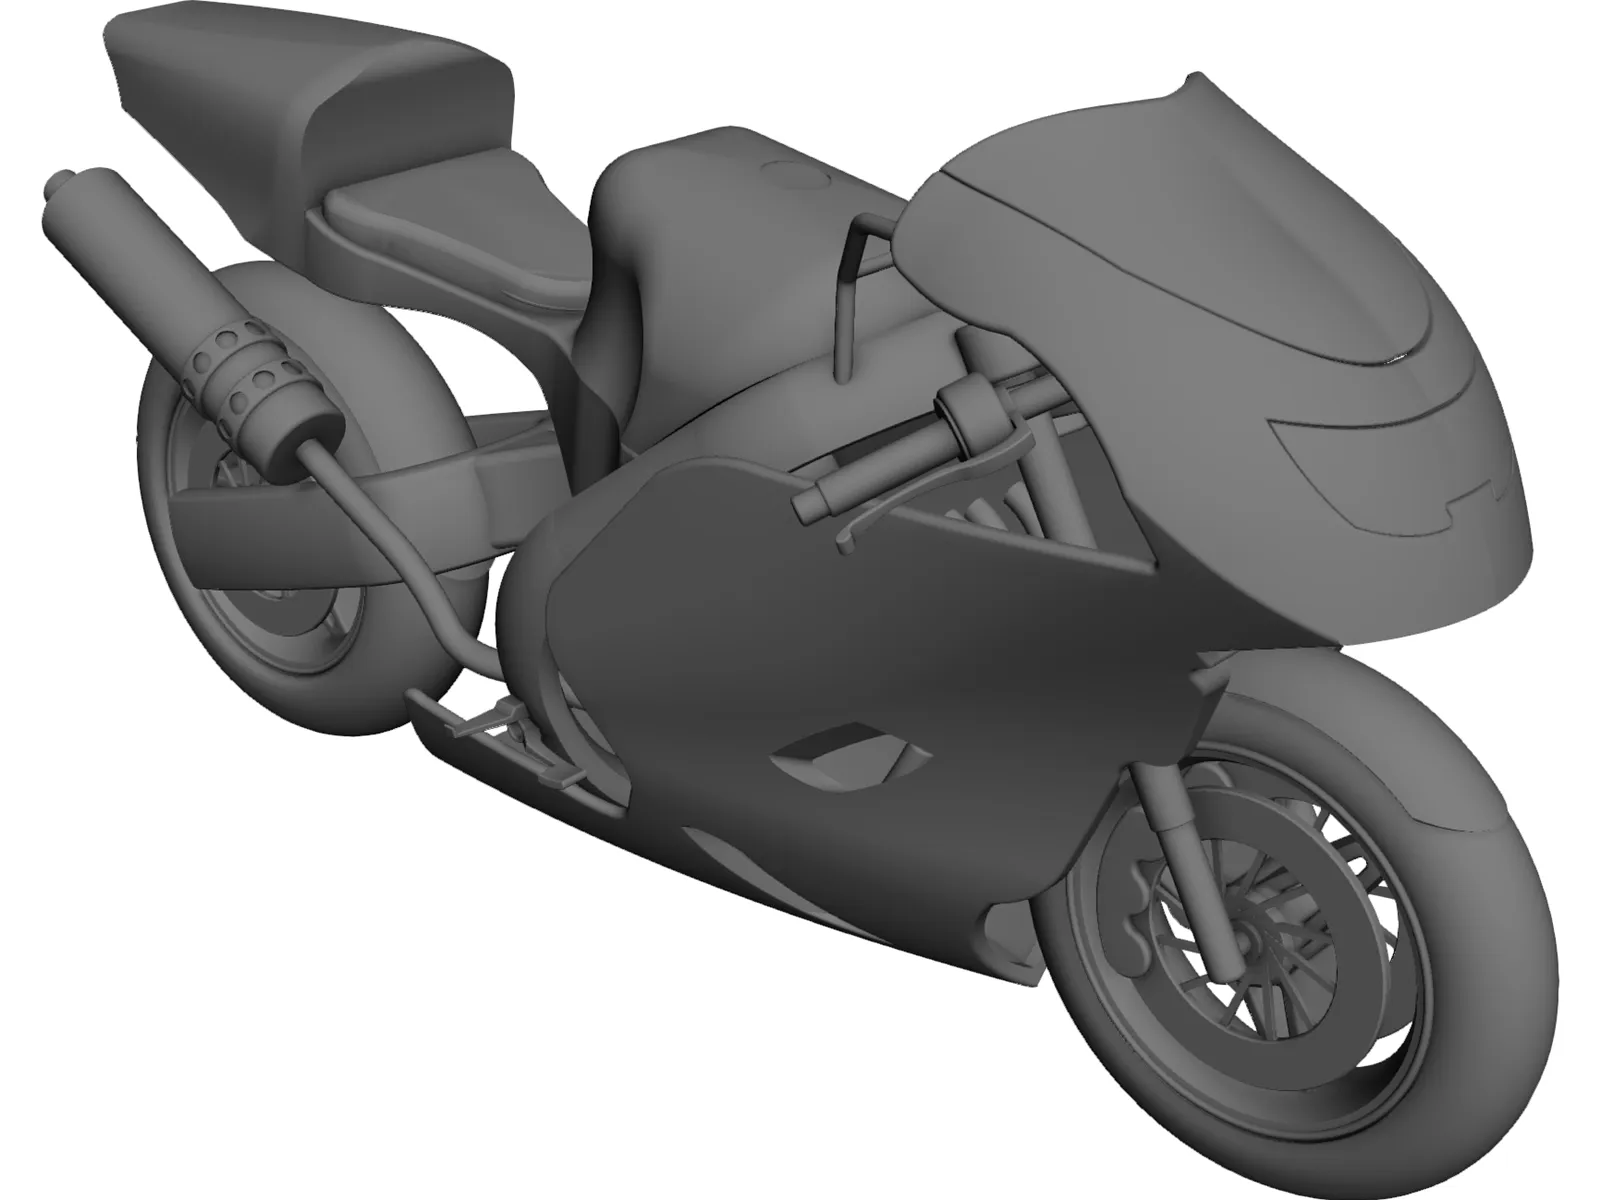 Honda CBR600RR Sport Bike 3D Model